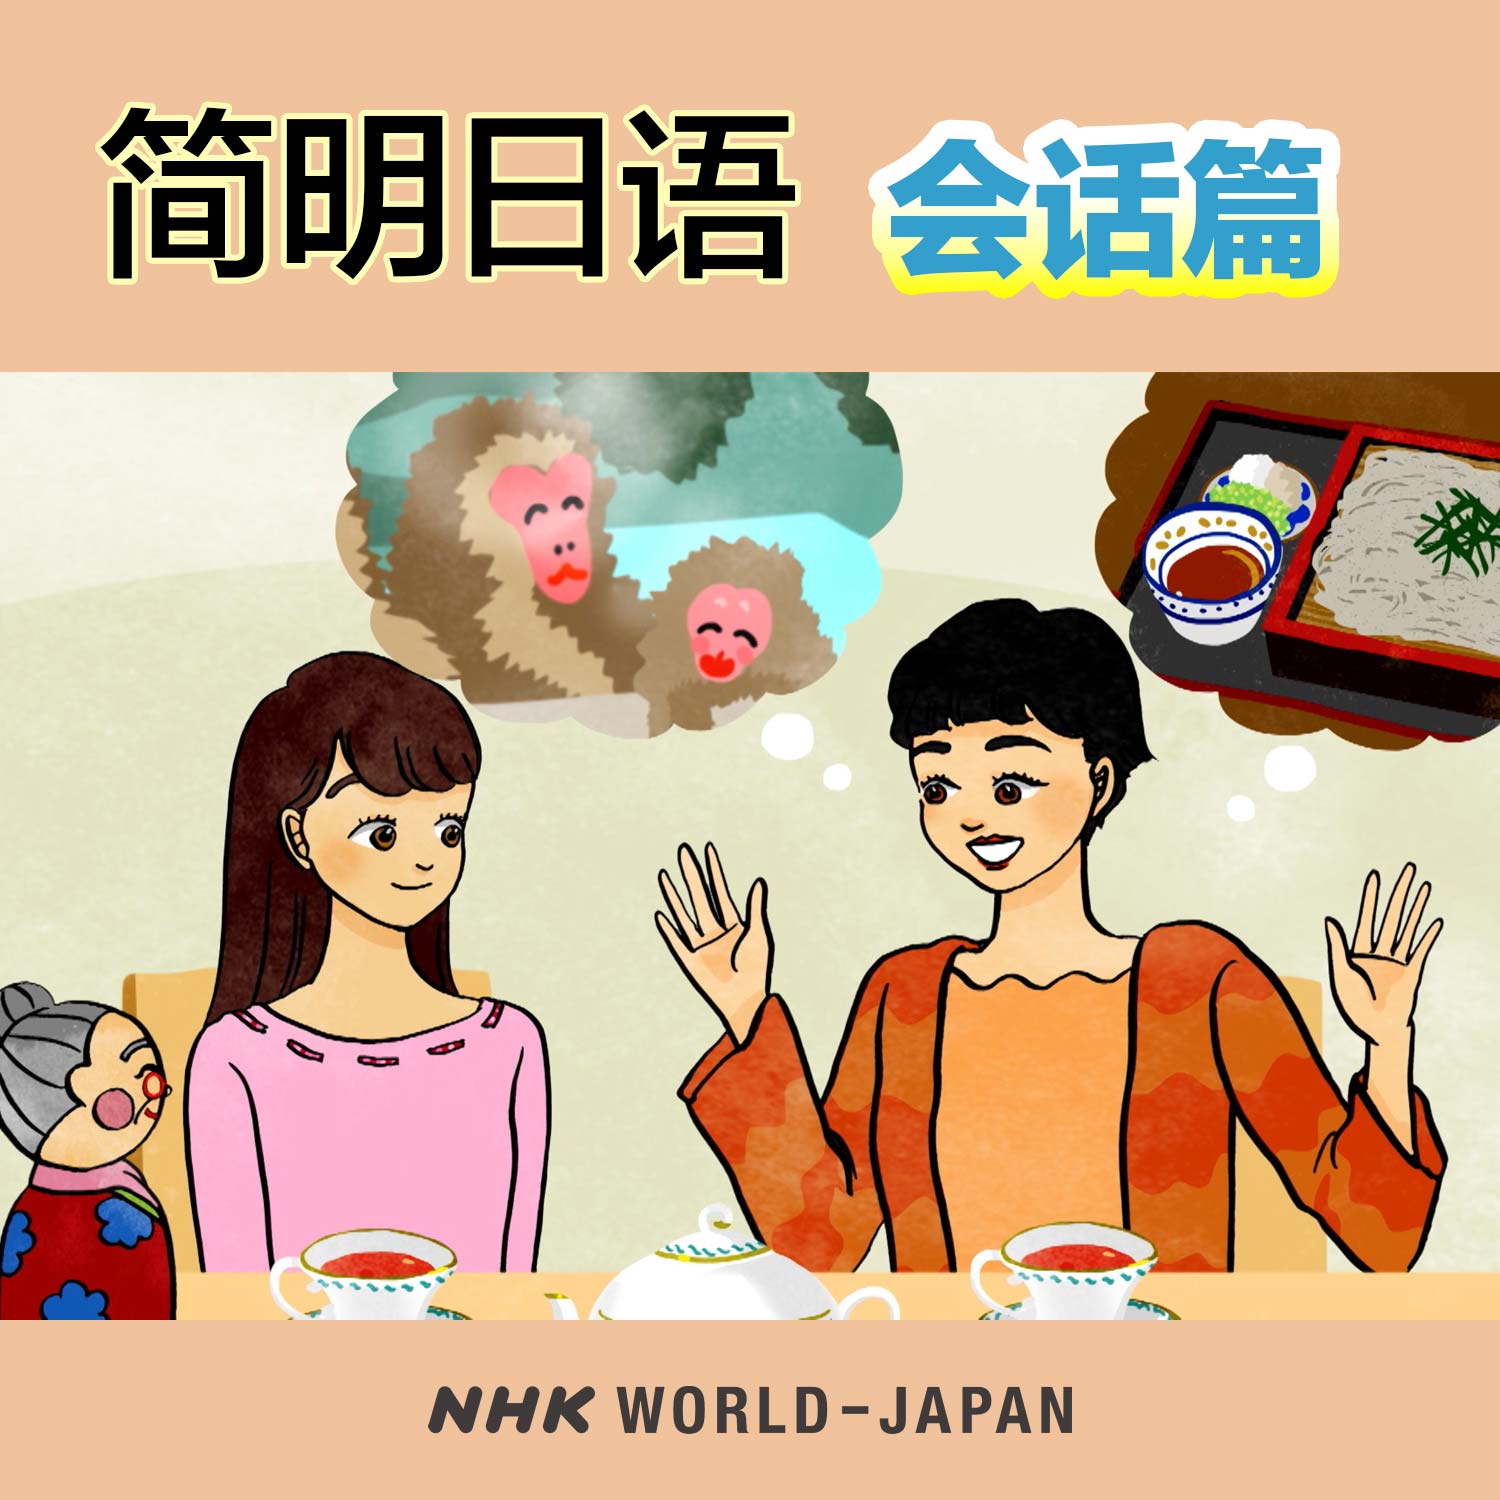 简明日语 会话篇 | NHK WORLD-JAPAN